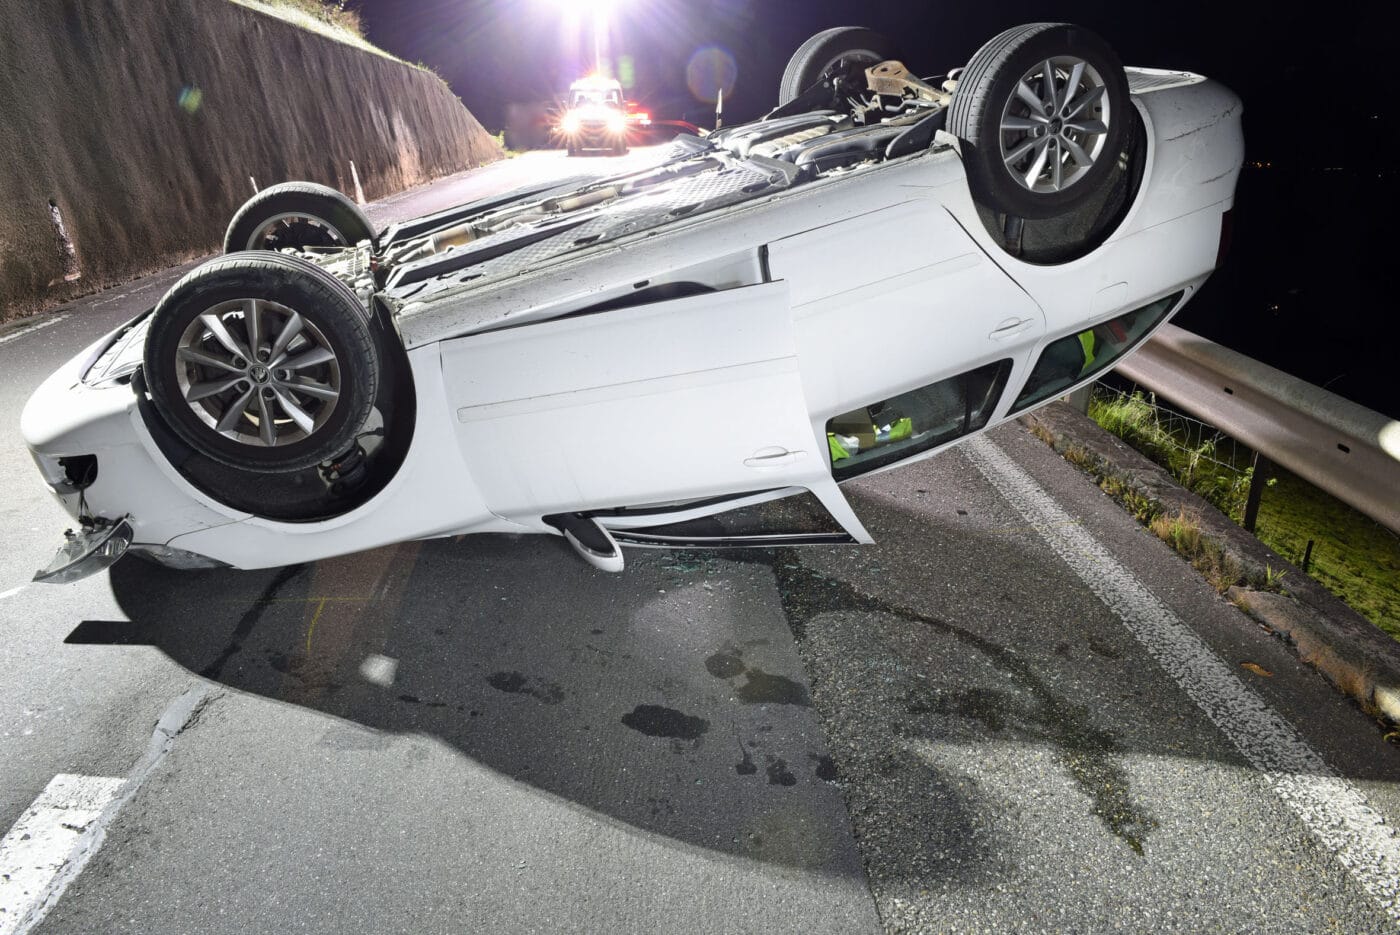 Alkoholisierter Autofahrer verursacht Selbstunfall – niemand verletzt